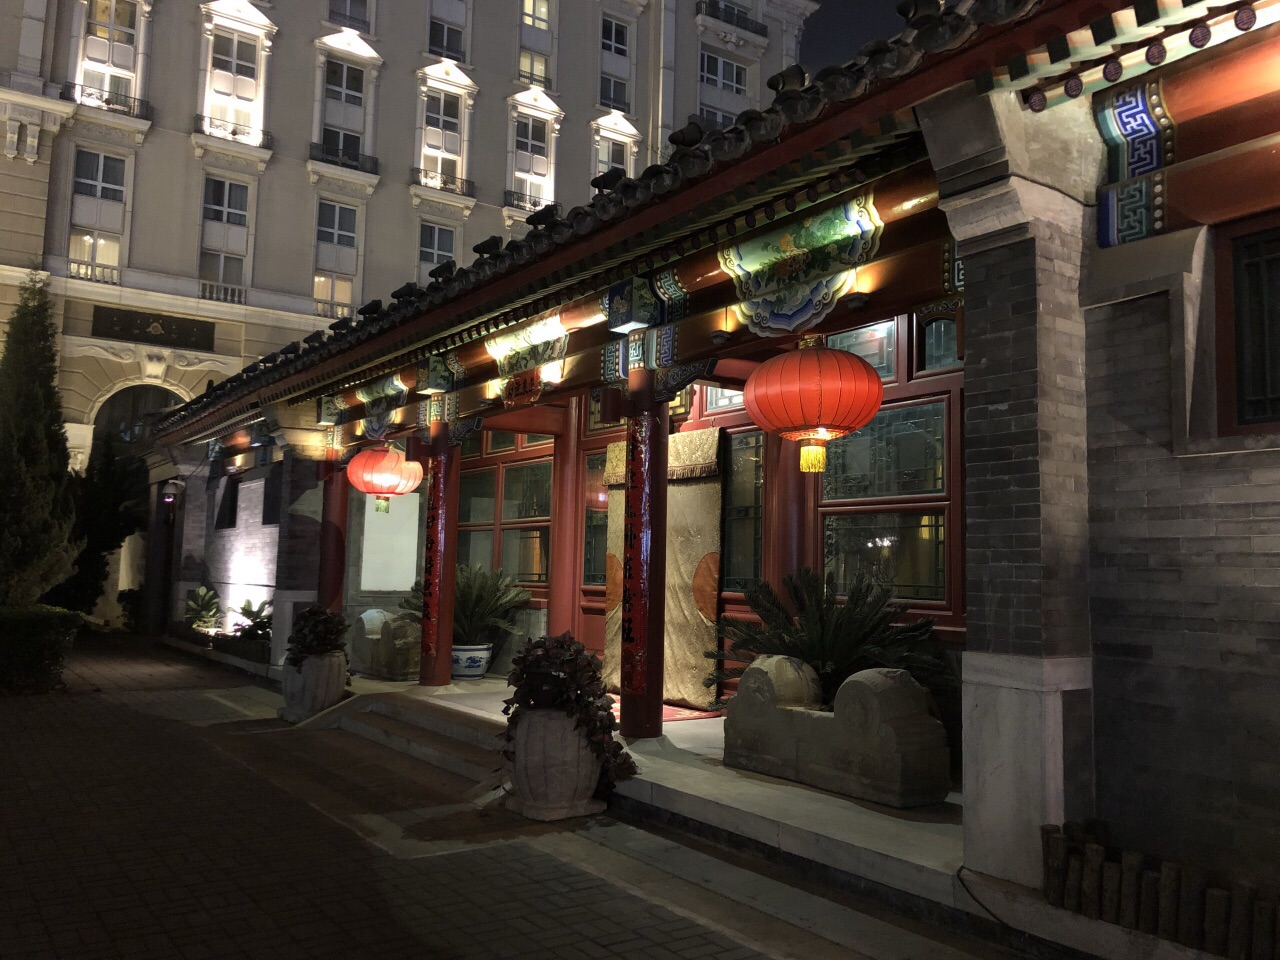 2023厉家菜(金宝街店)美食餐厅,很好吃 印象最深的菊花豆腐汤...【去哪儿攻略】